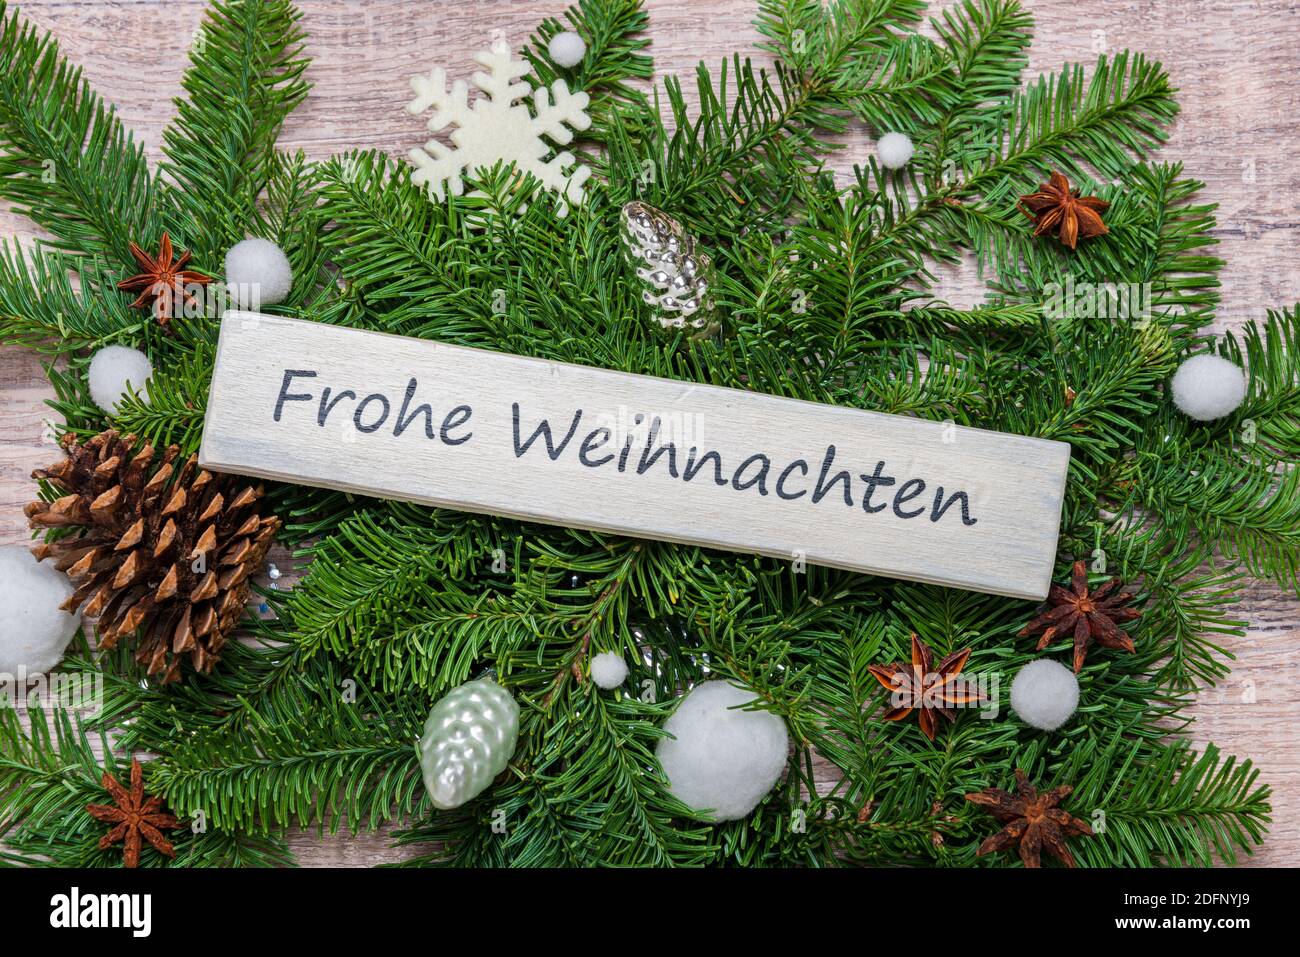 Weihnachtsdekoration mit grünen tannenzweigen und einem Schild 'Frohe Weihnachten' Stock Photo